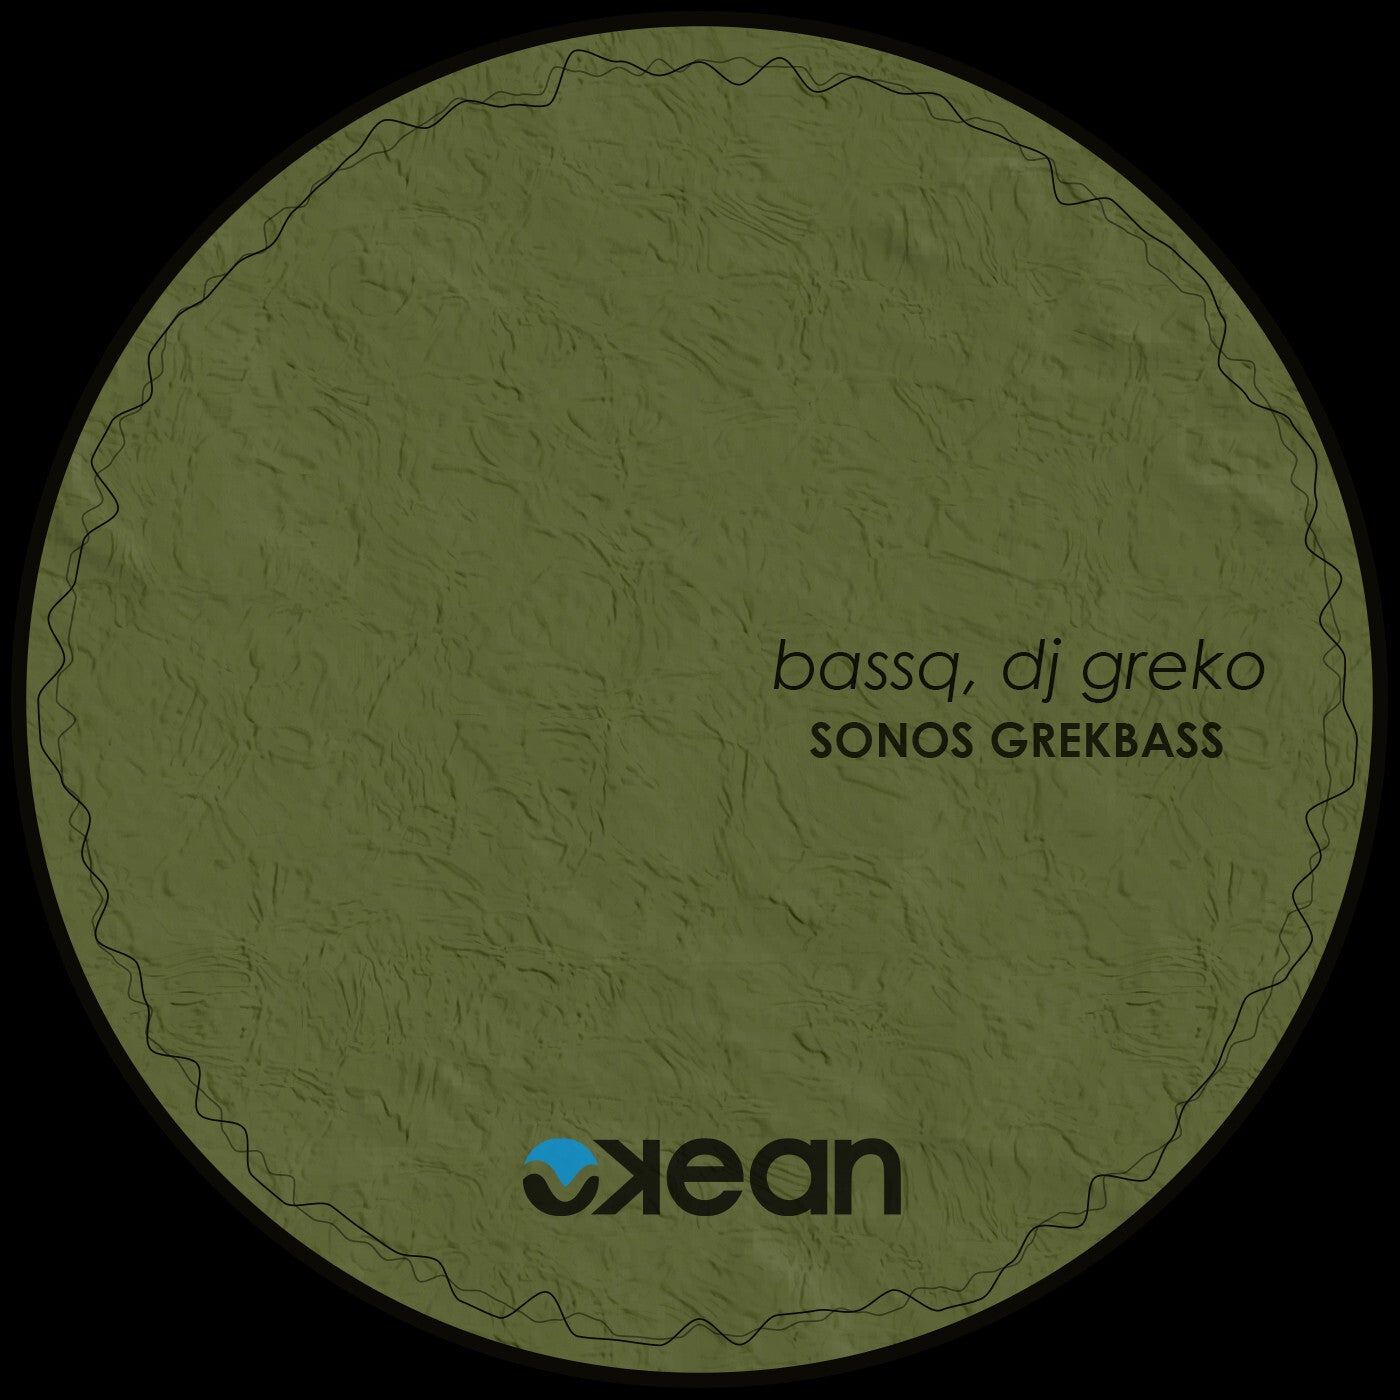 BassQ & Dj Greko - Sonos Grekbass [Okean]